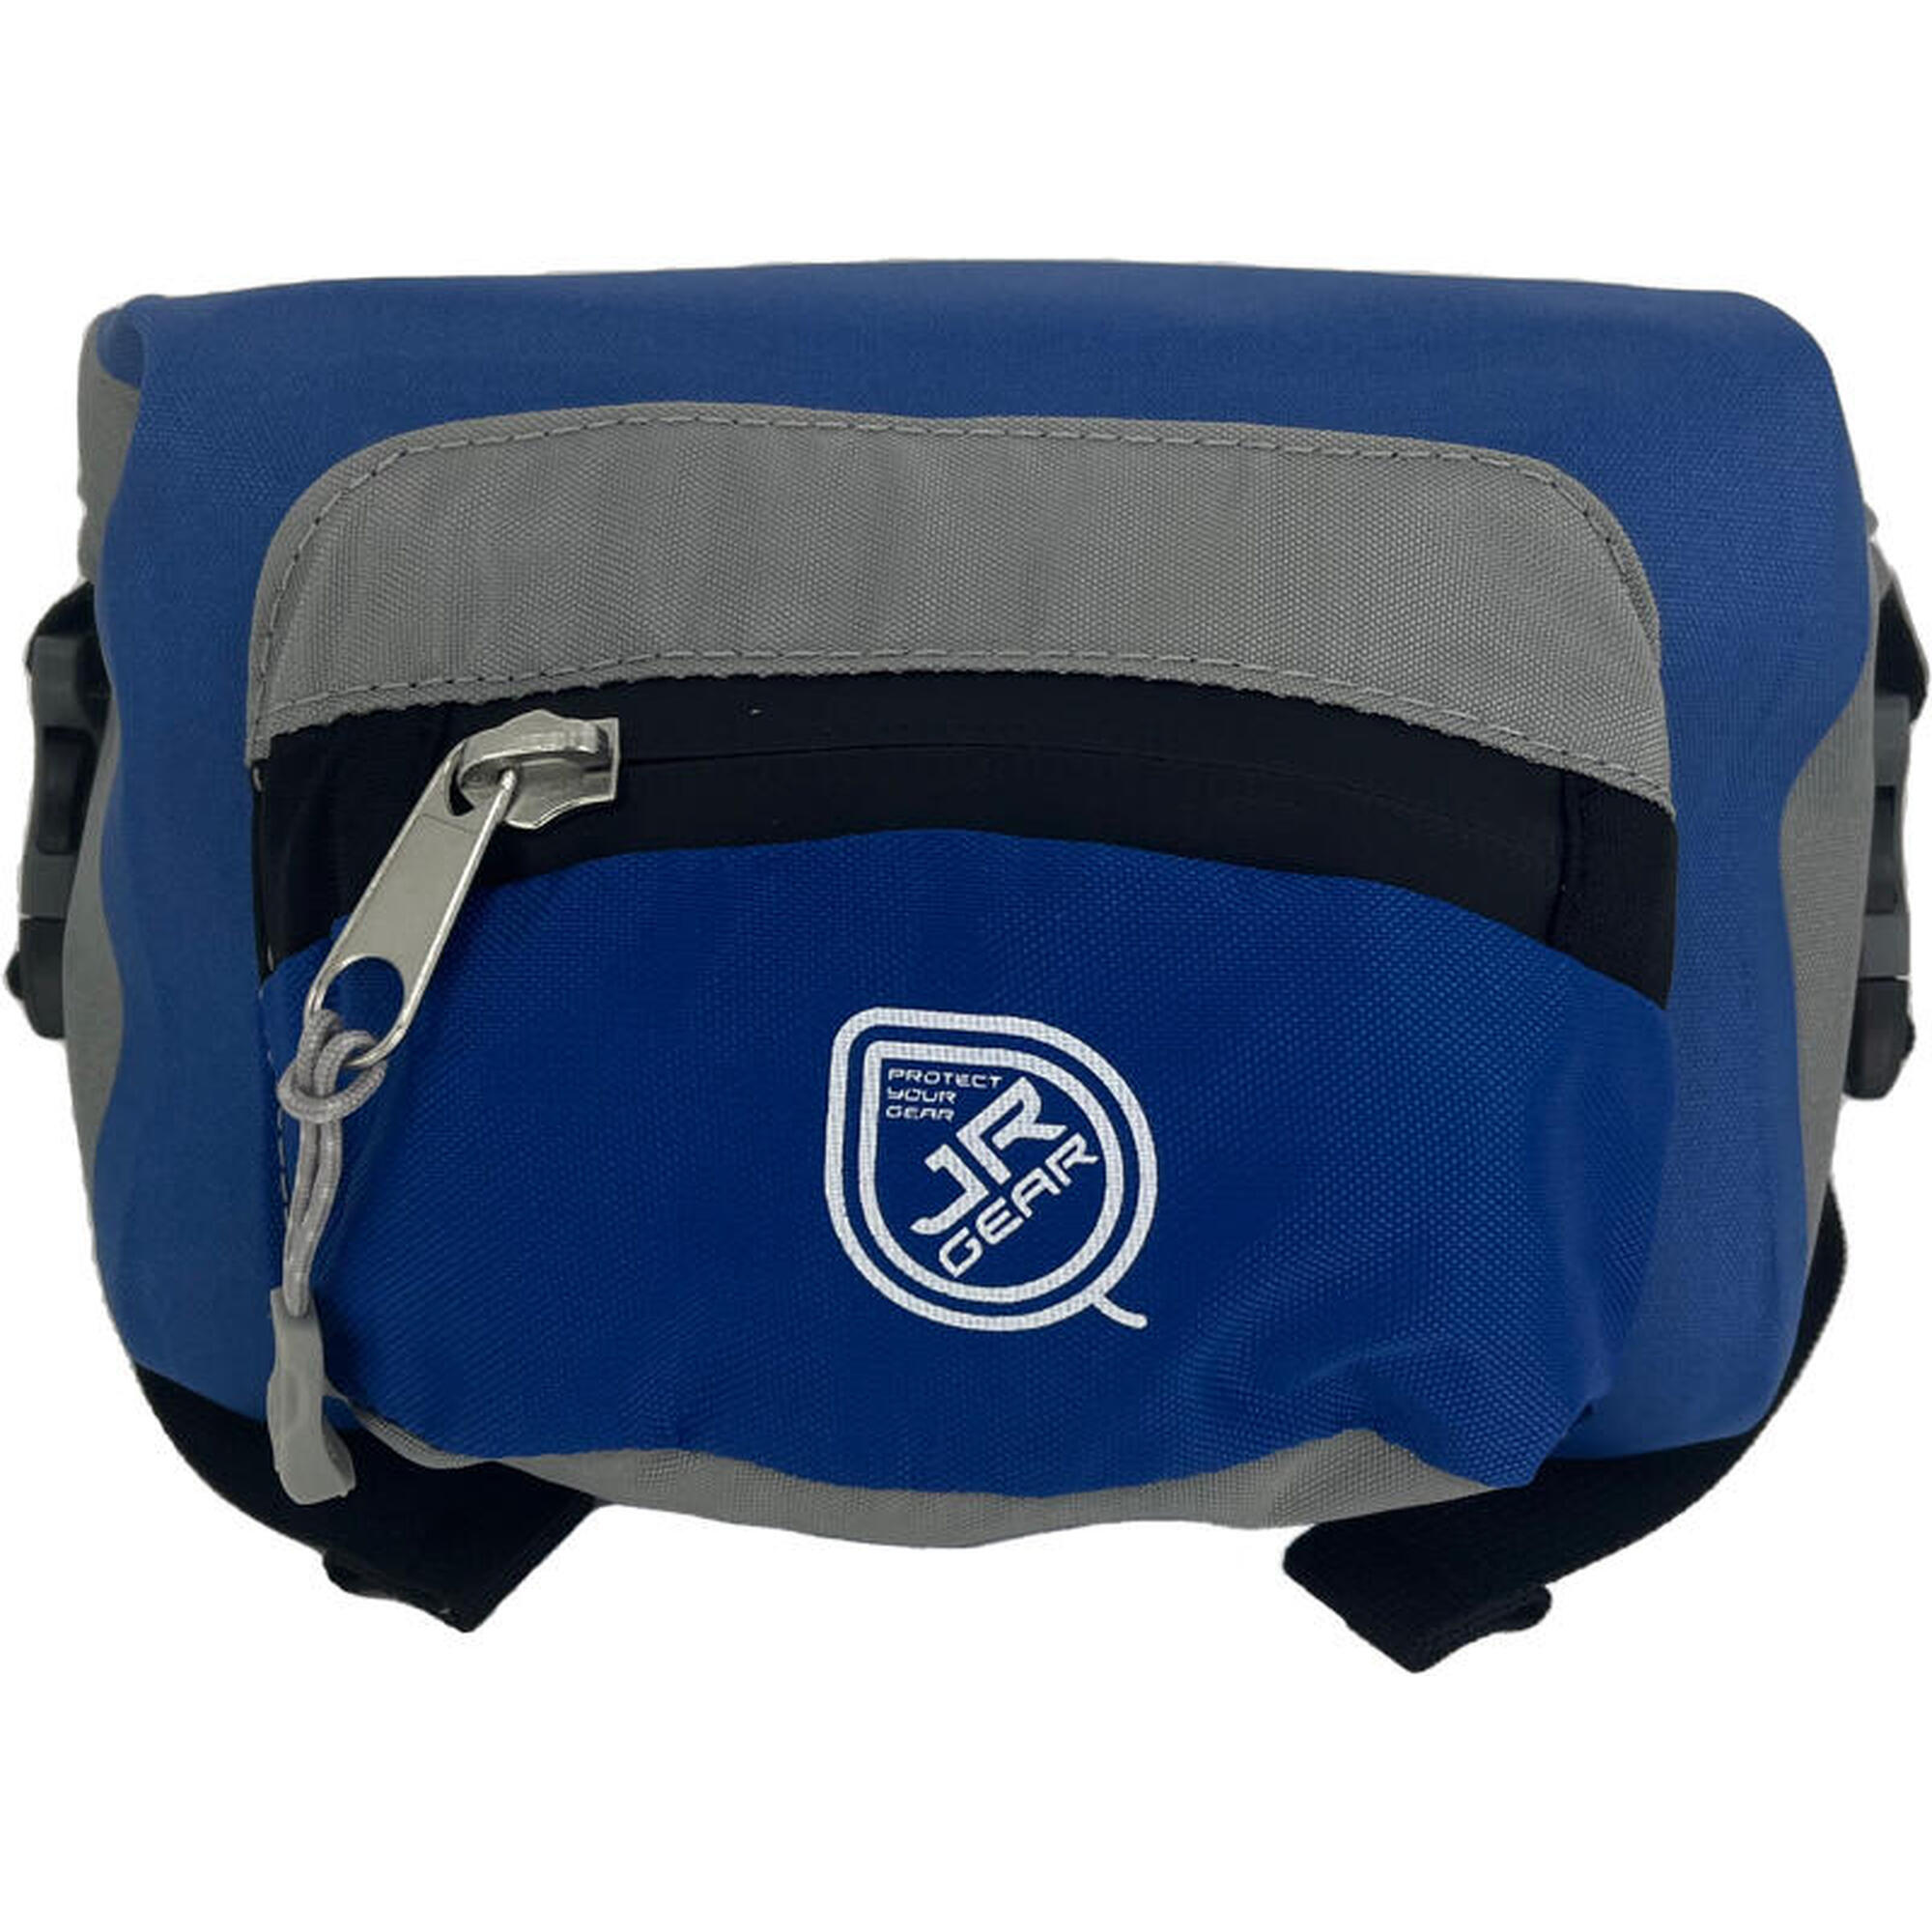 IPX4 Waterproof Roll-Top Waist Bag 3L - Green